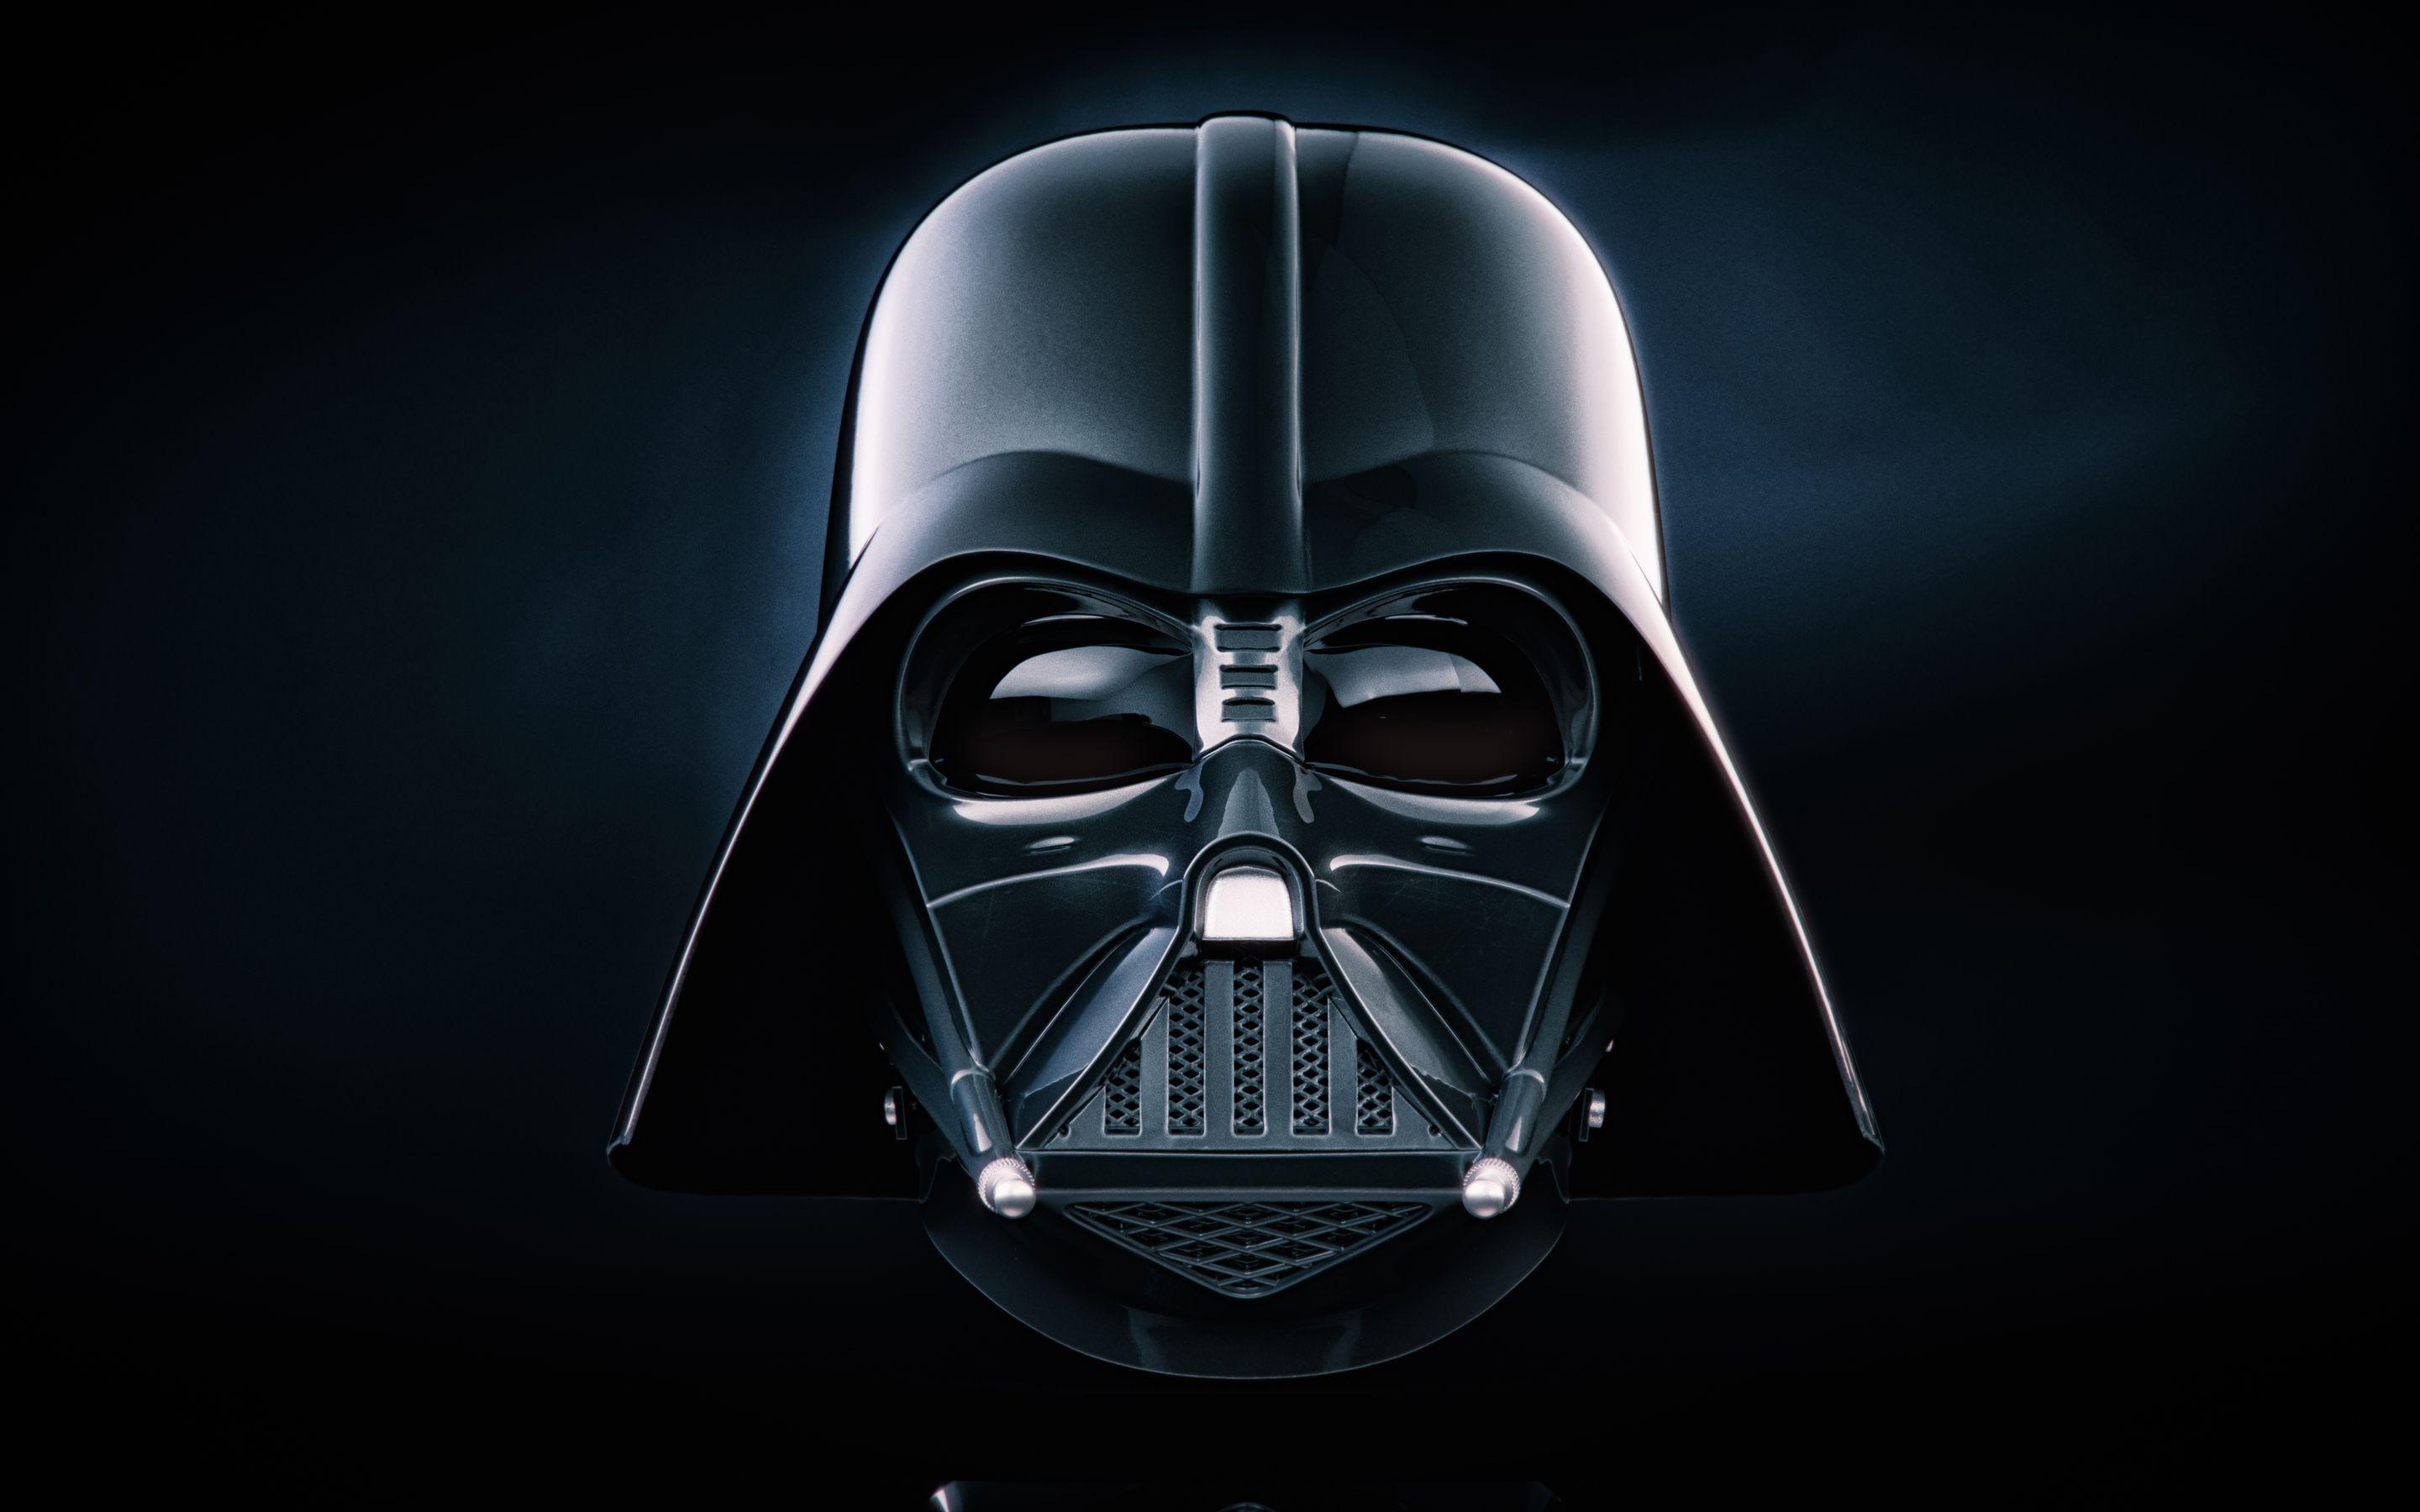 2880x1800 Darth Vader 5k Macbook Pro Retina HD 4k Hình nền, Hình ảnh, Bối cảnh, Hình ảnh và Hình ảnh